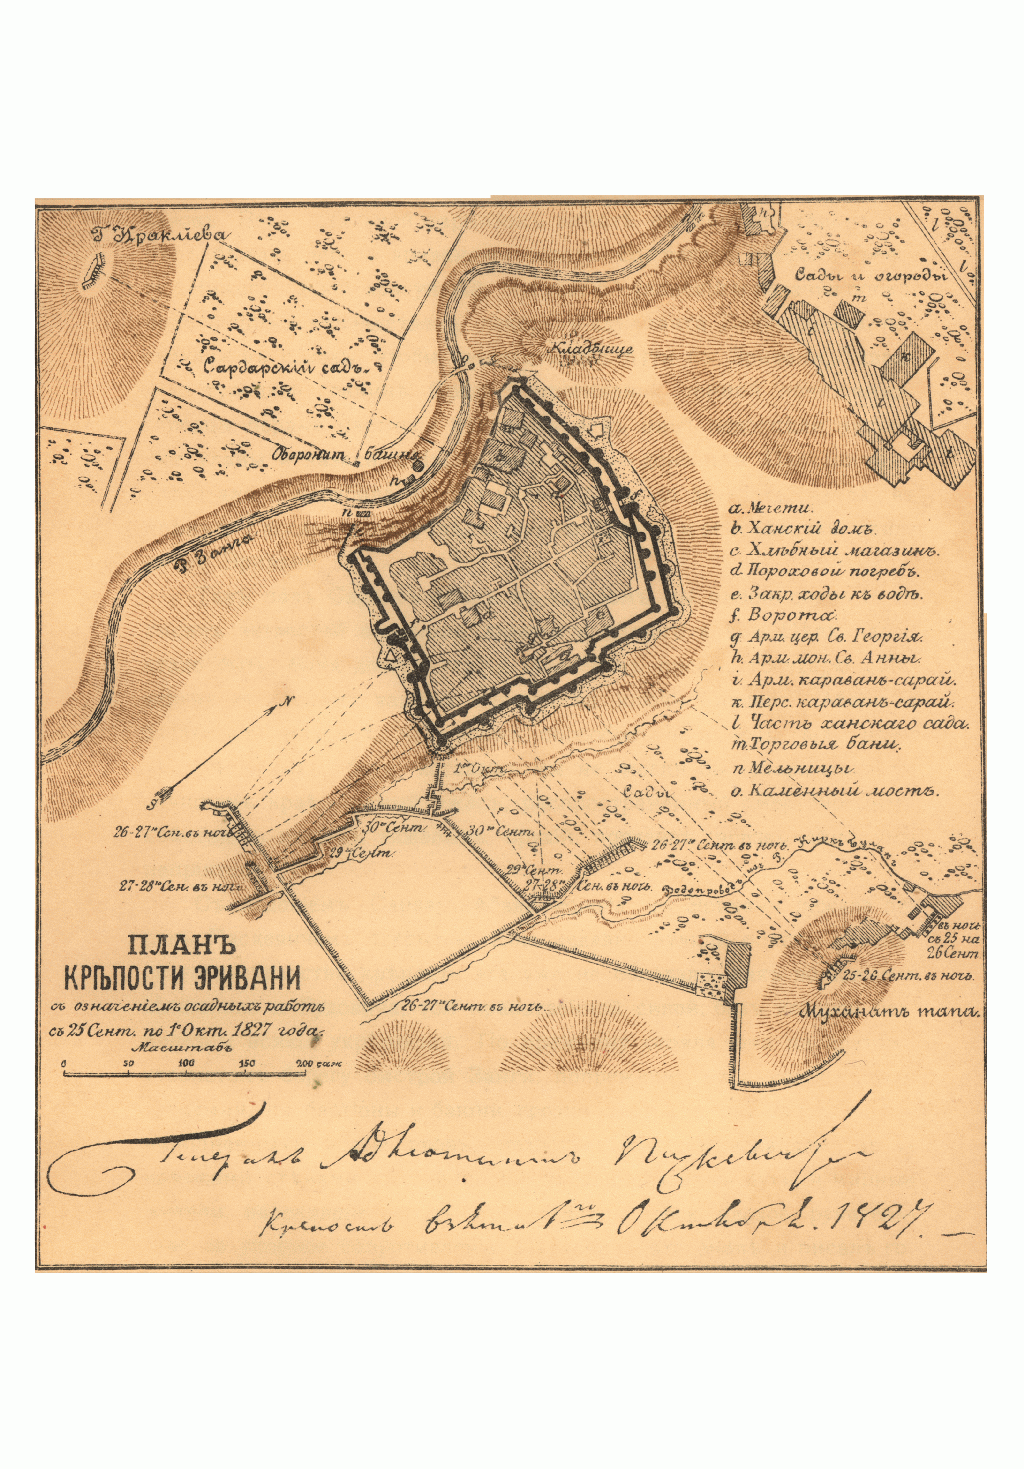 (Рисунок 6). План крепости Эривани, с означением осадных работ с 25 сентября по 1 октября 1827 года